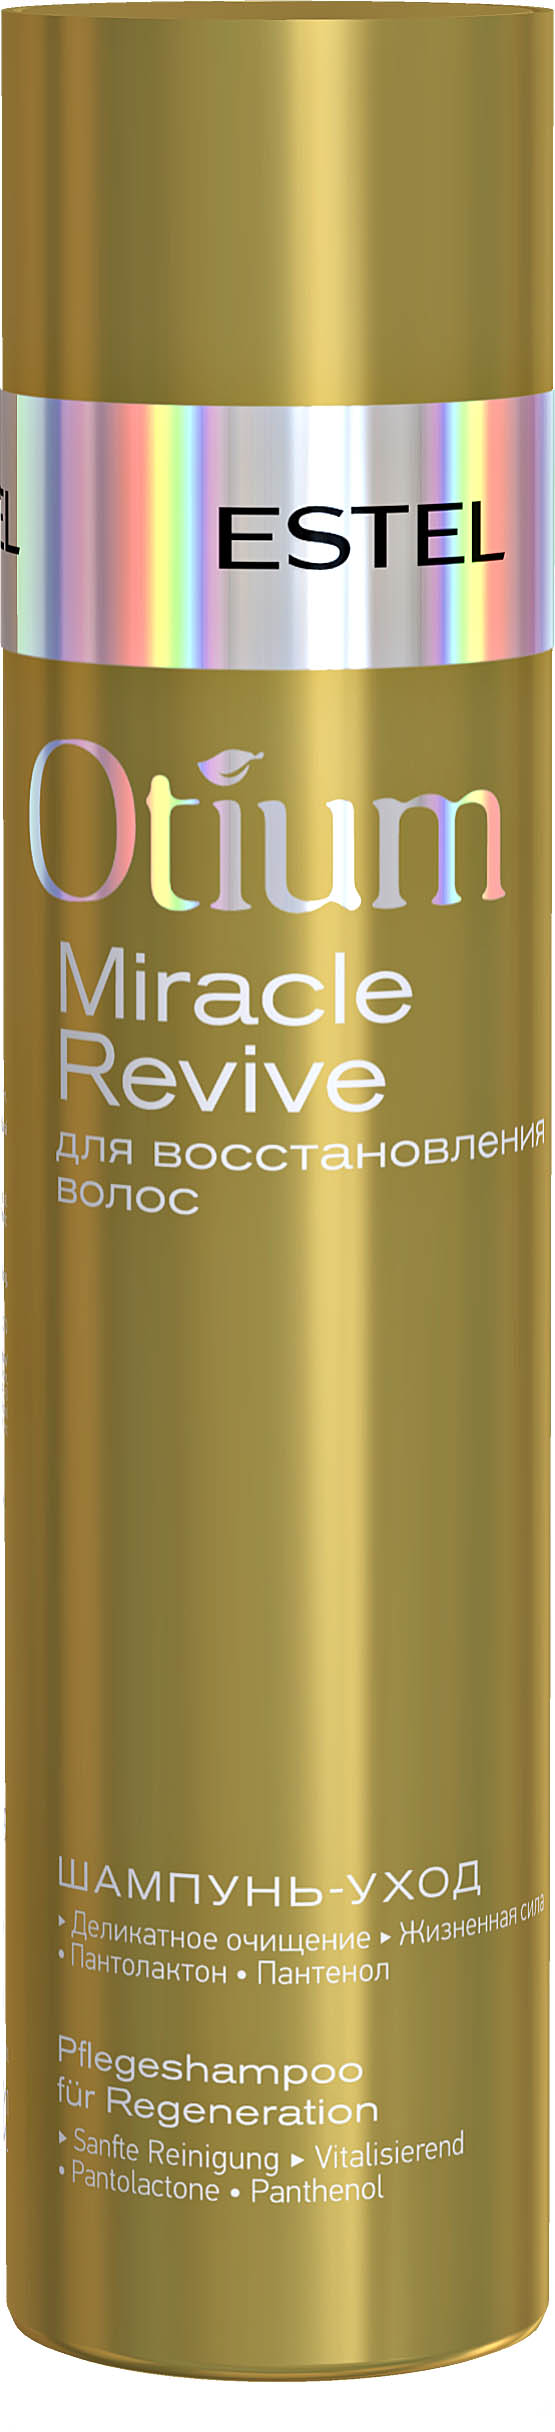 Шампунь-уход для восстановления волос OTIUM MIRACLE REVIVE, 250 мл OTM.29